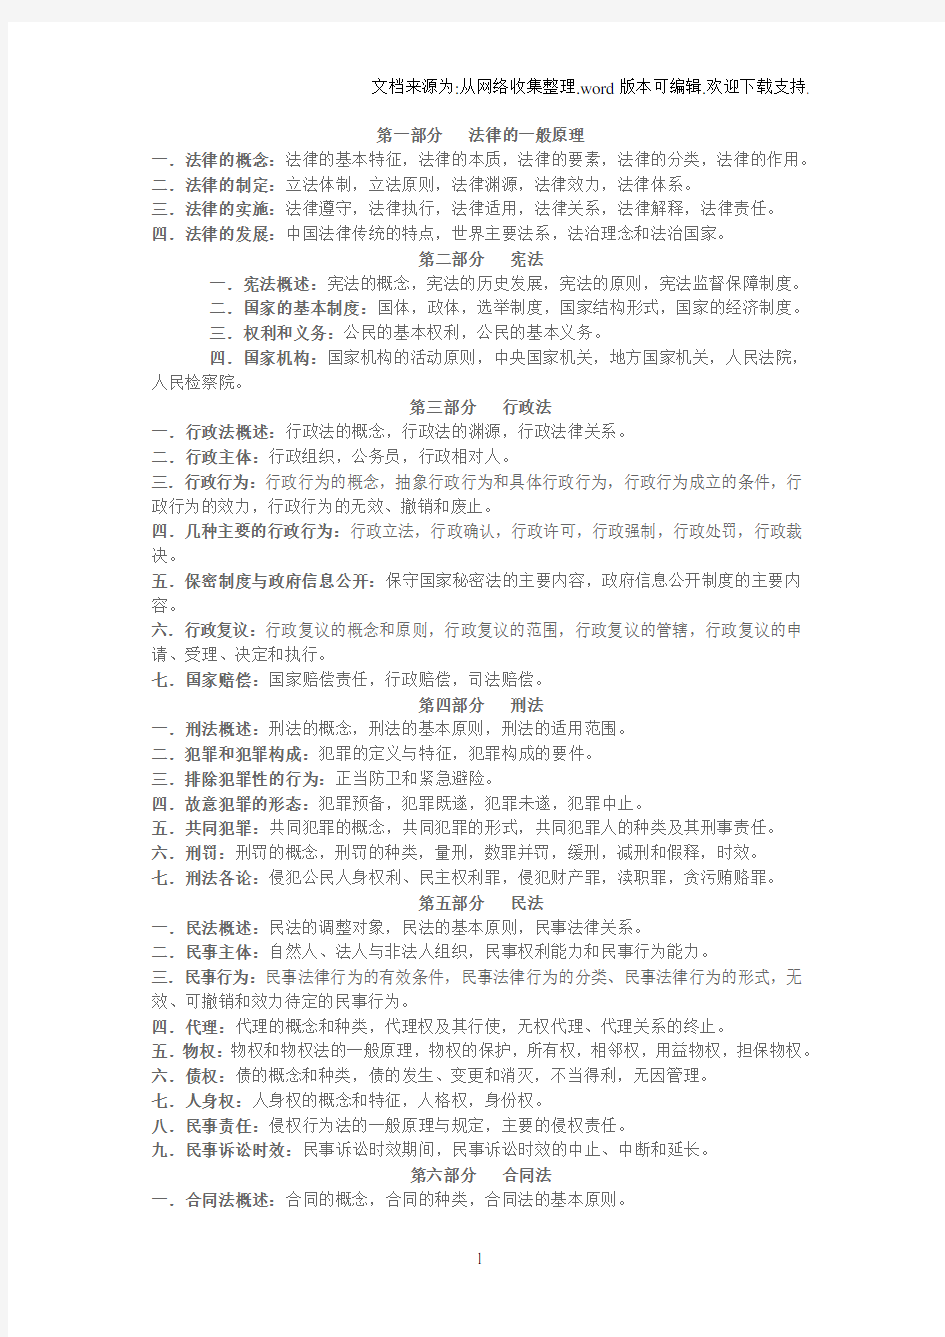 上海公务员专业课大纲政法类